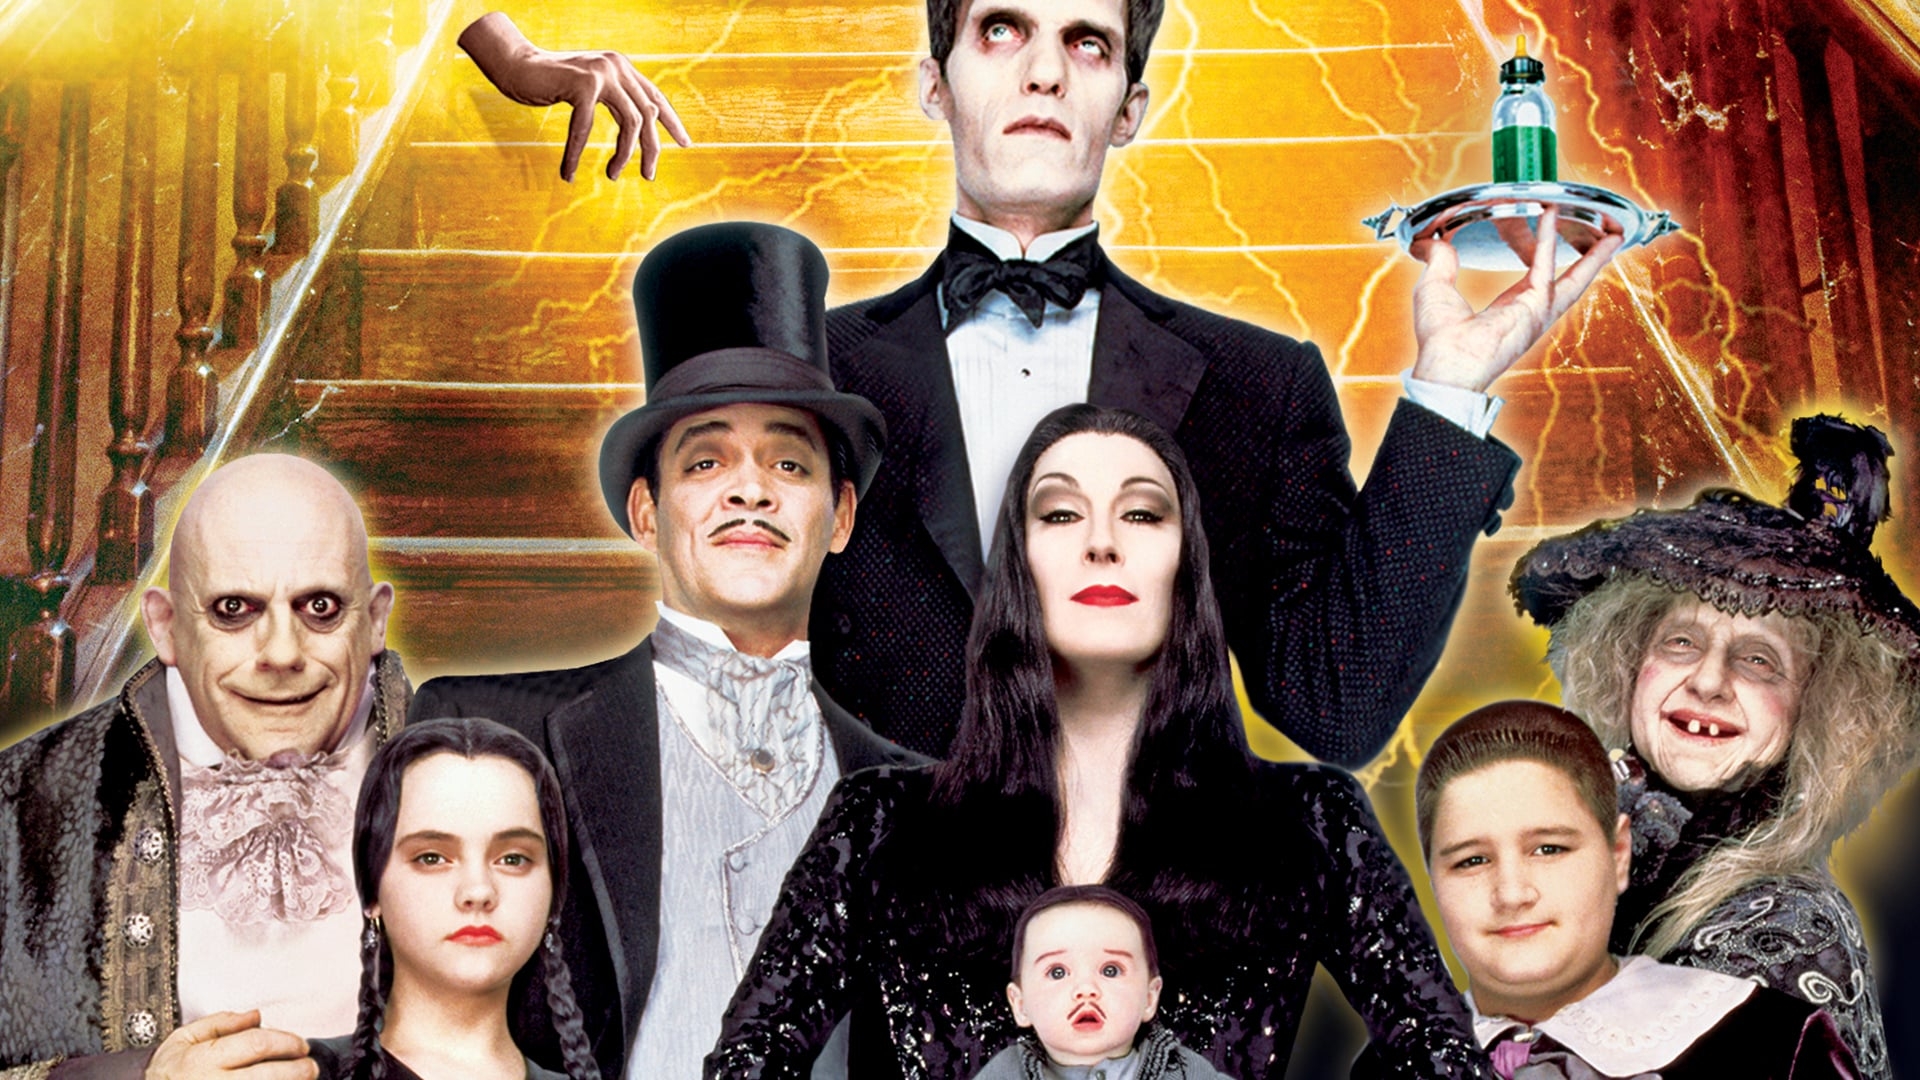 Addams Family Values (Addams Family Values)